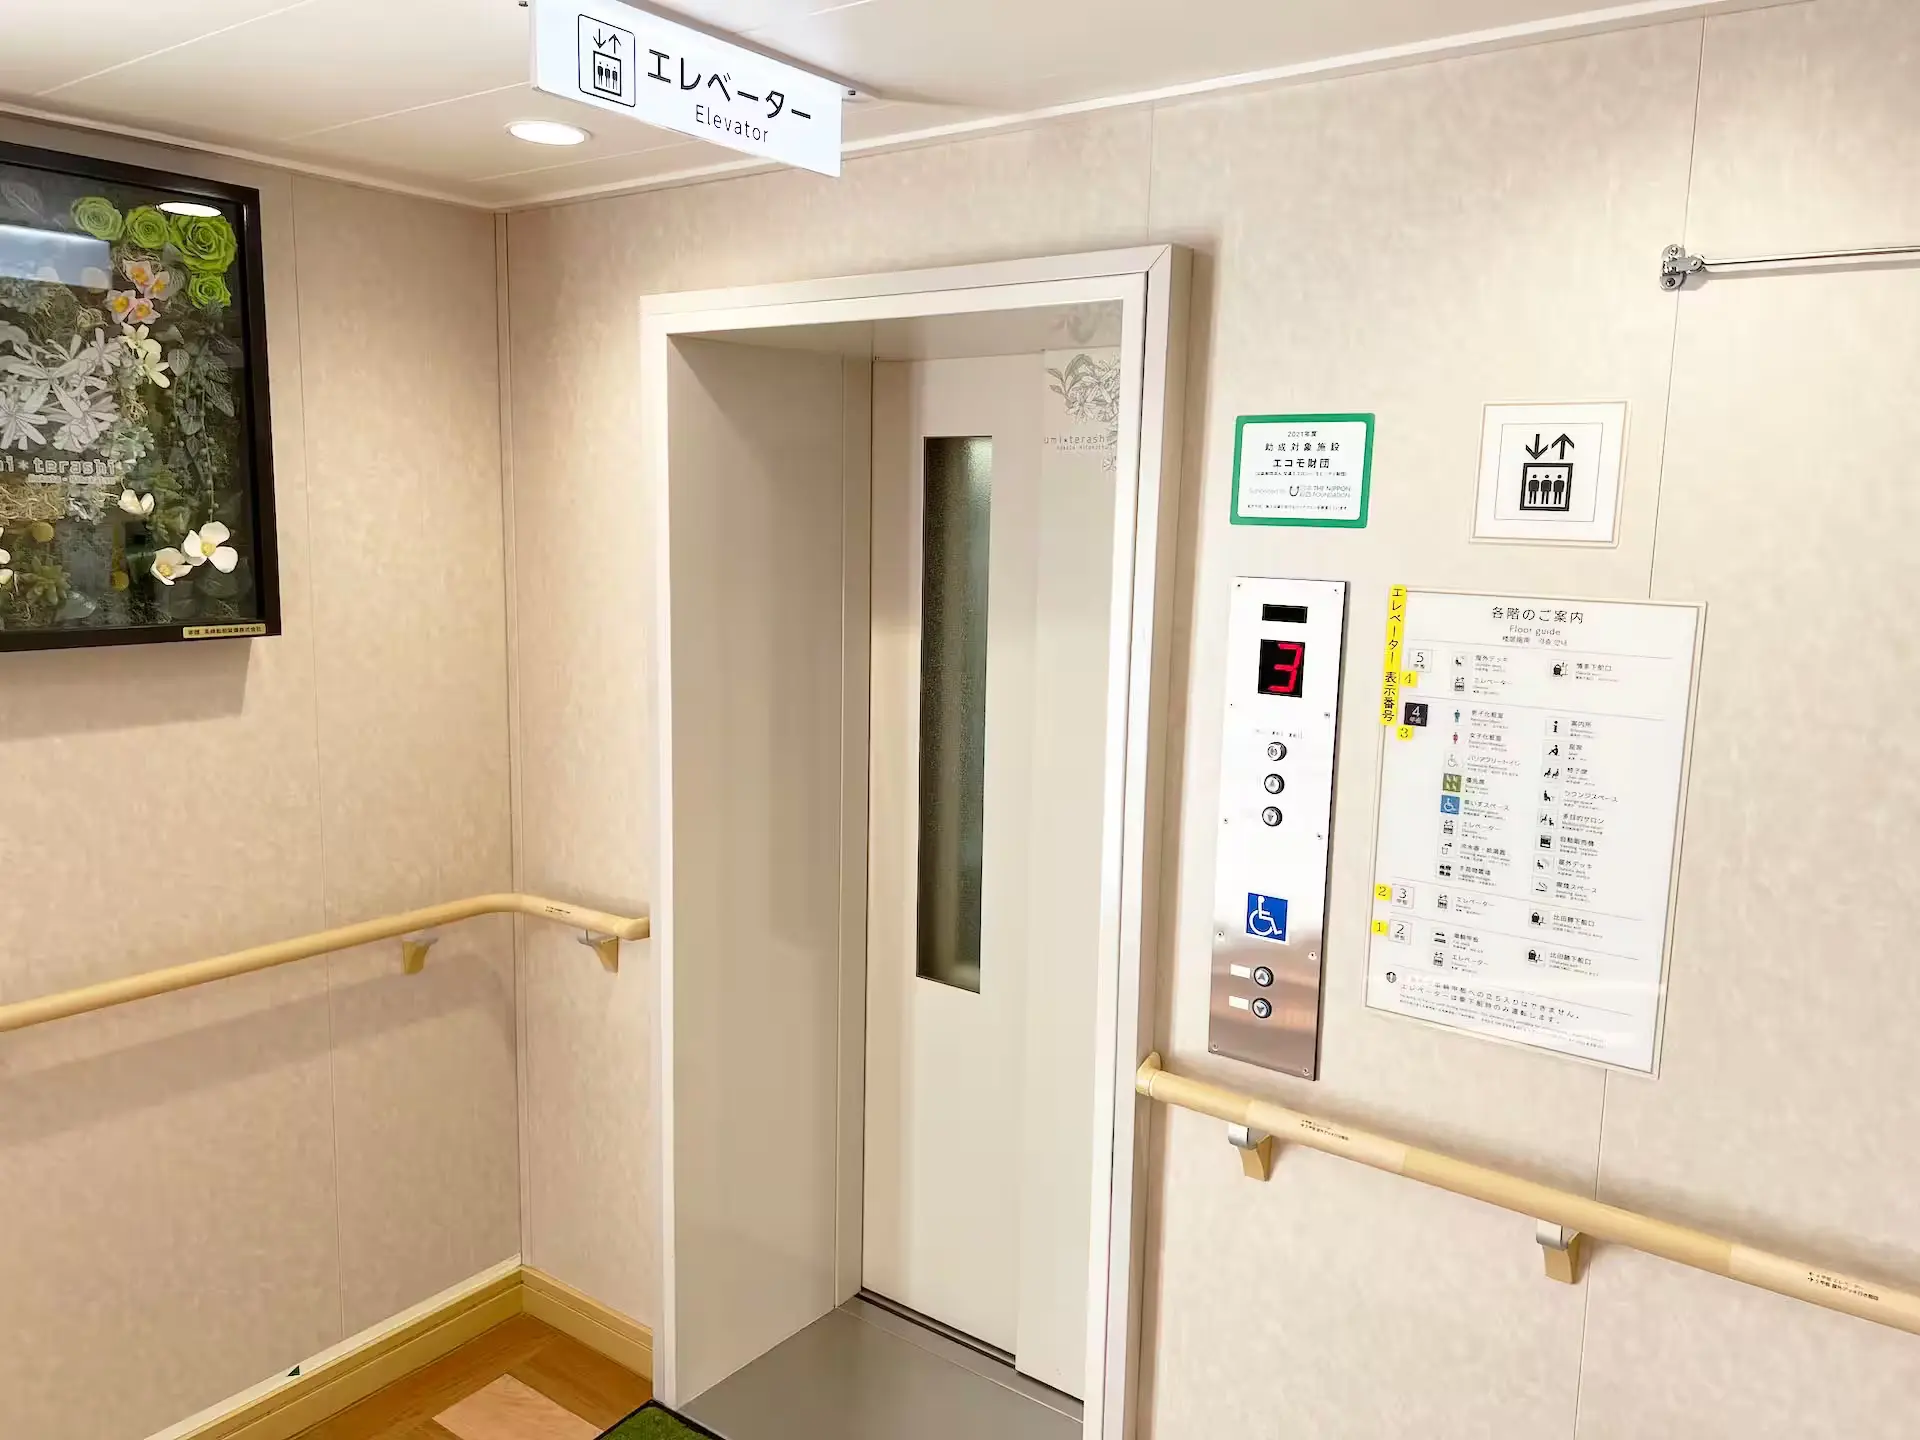 九州邮轮海照号上的电梯